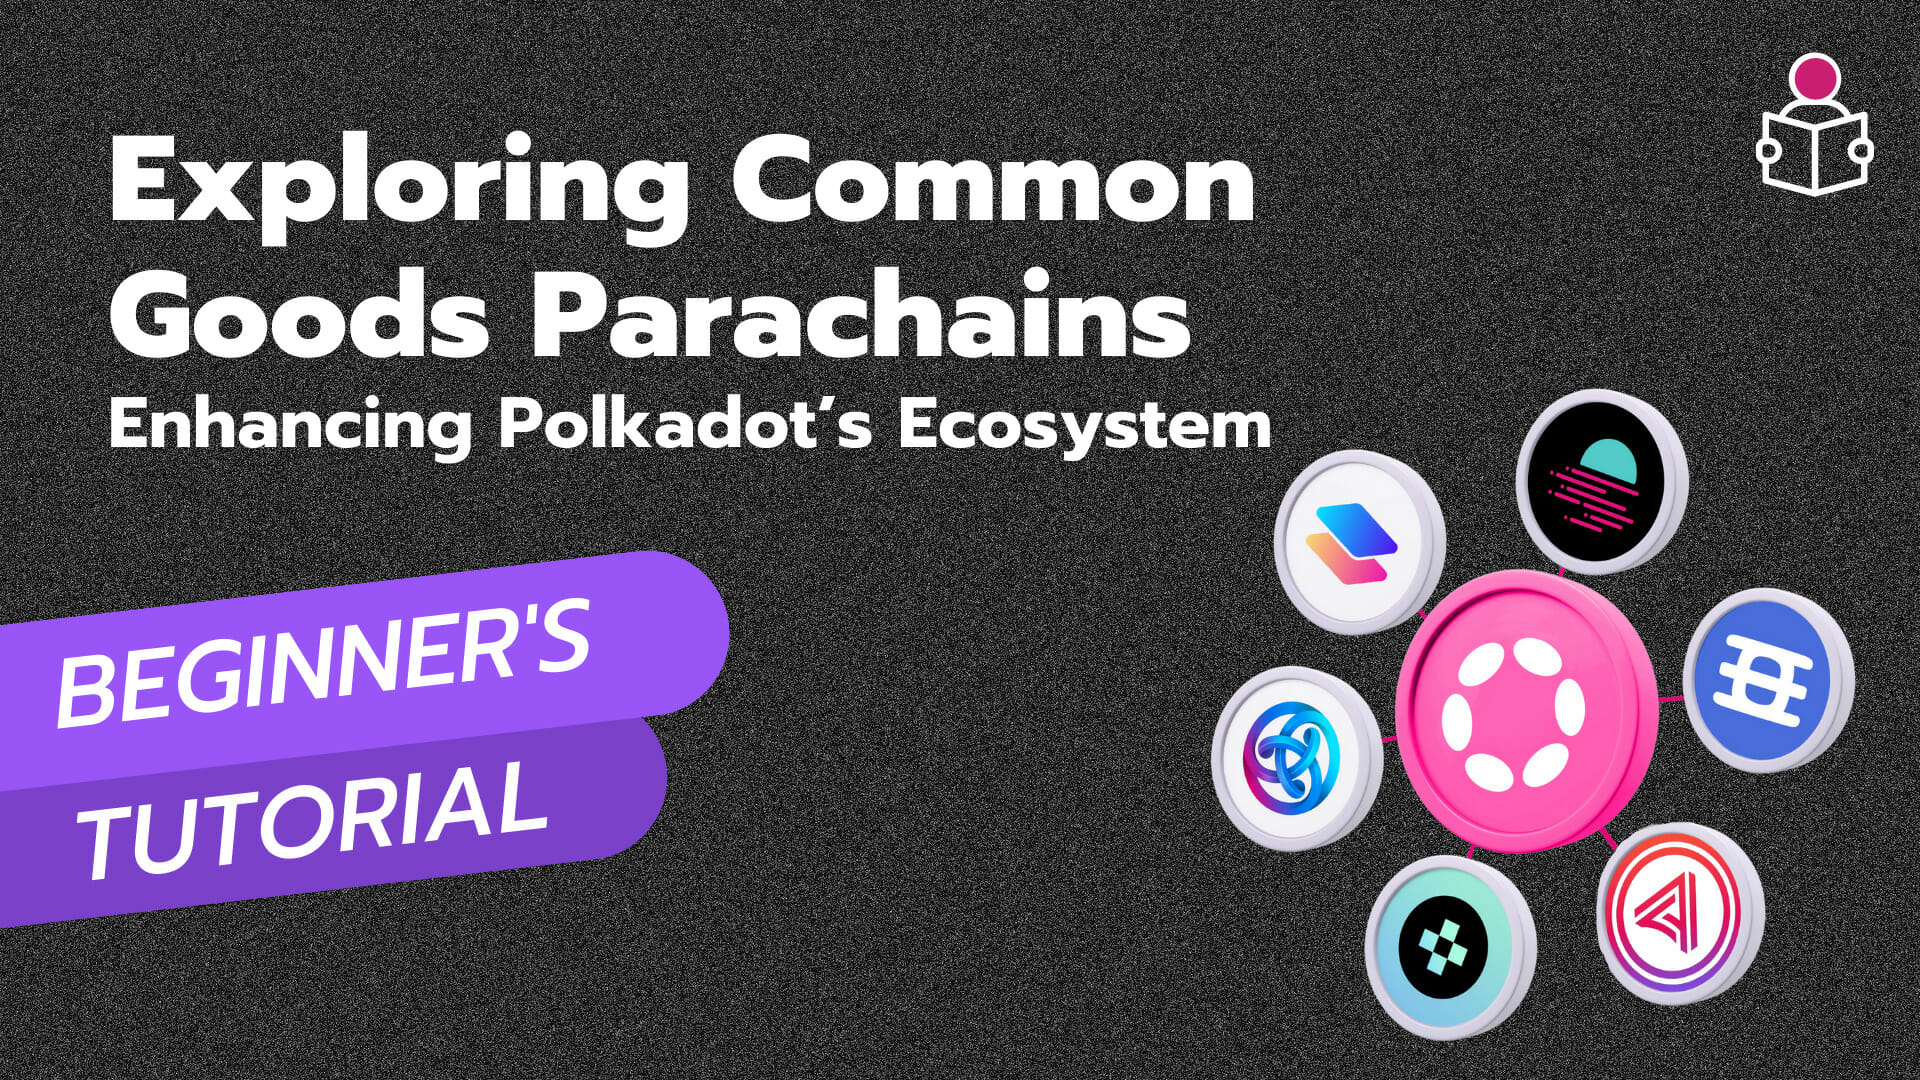 Exploring Common Goods Parachains Enhancing Polkadot’s Ecosystem - Describedot